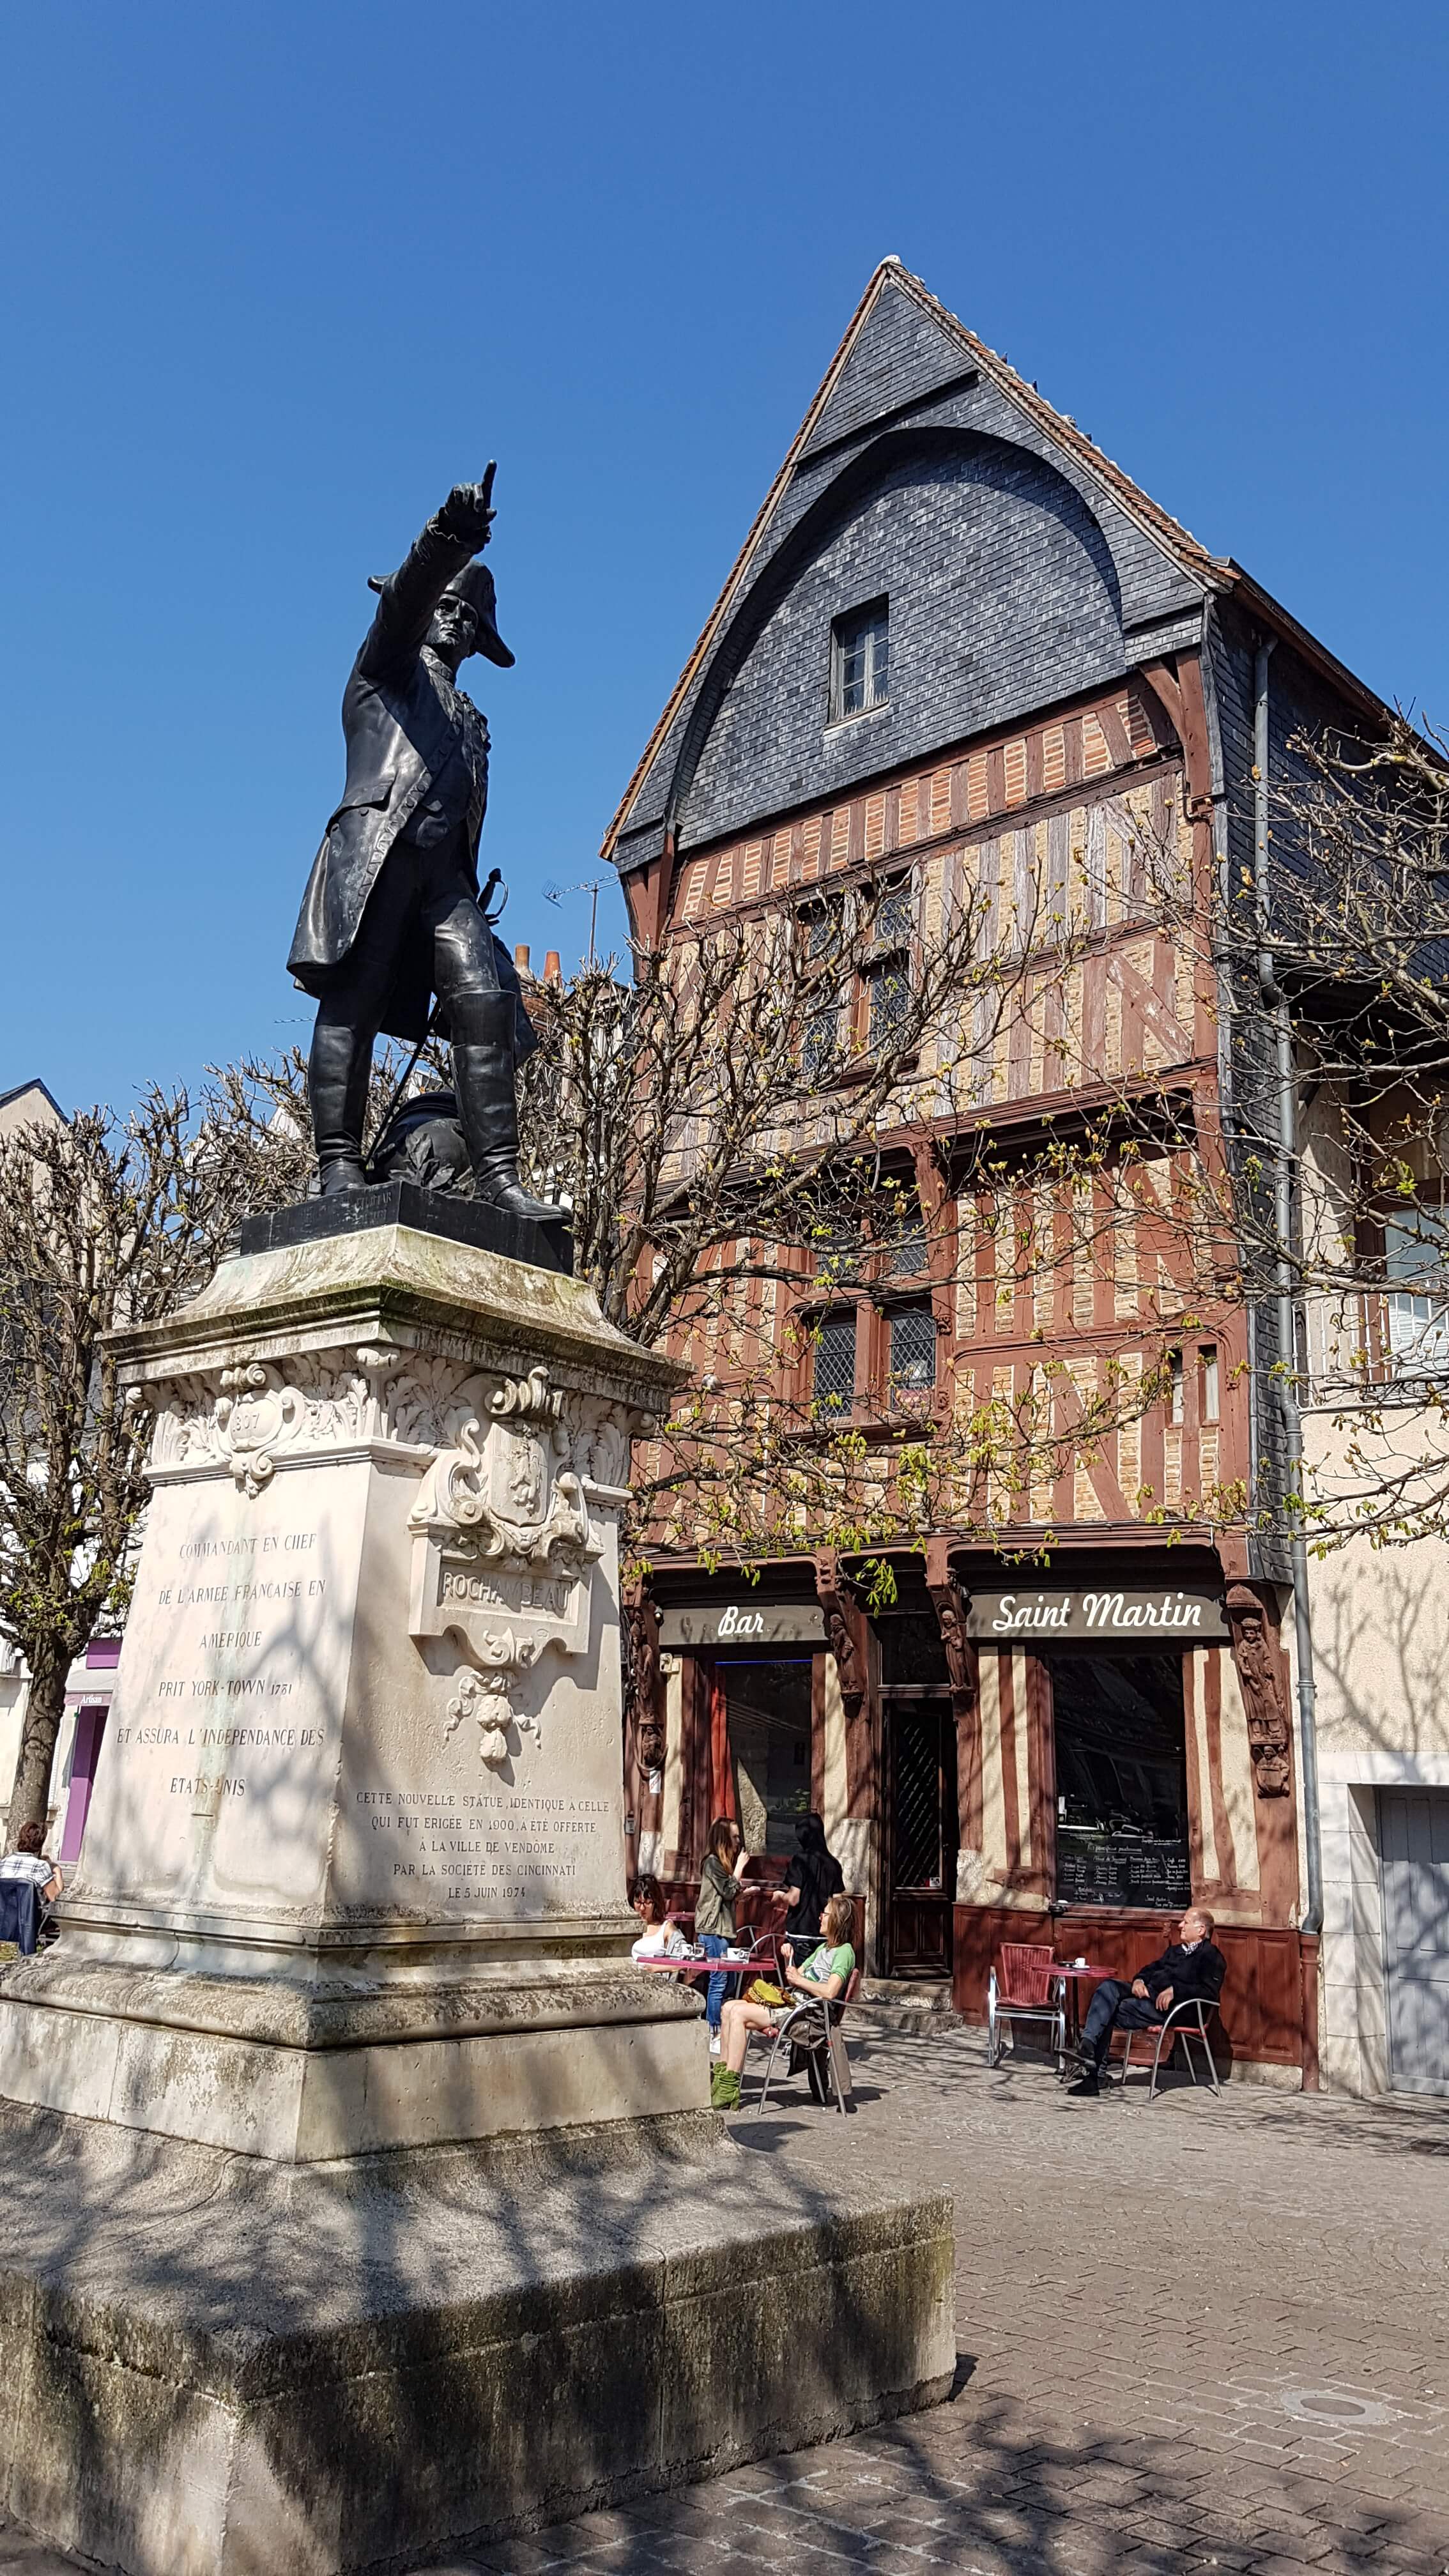 En premier plan la statue du Maréchal de Rochambeau et derrière lui une maison à pans de bois